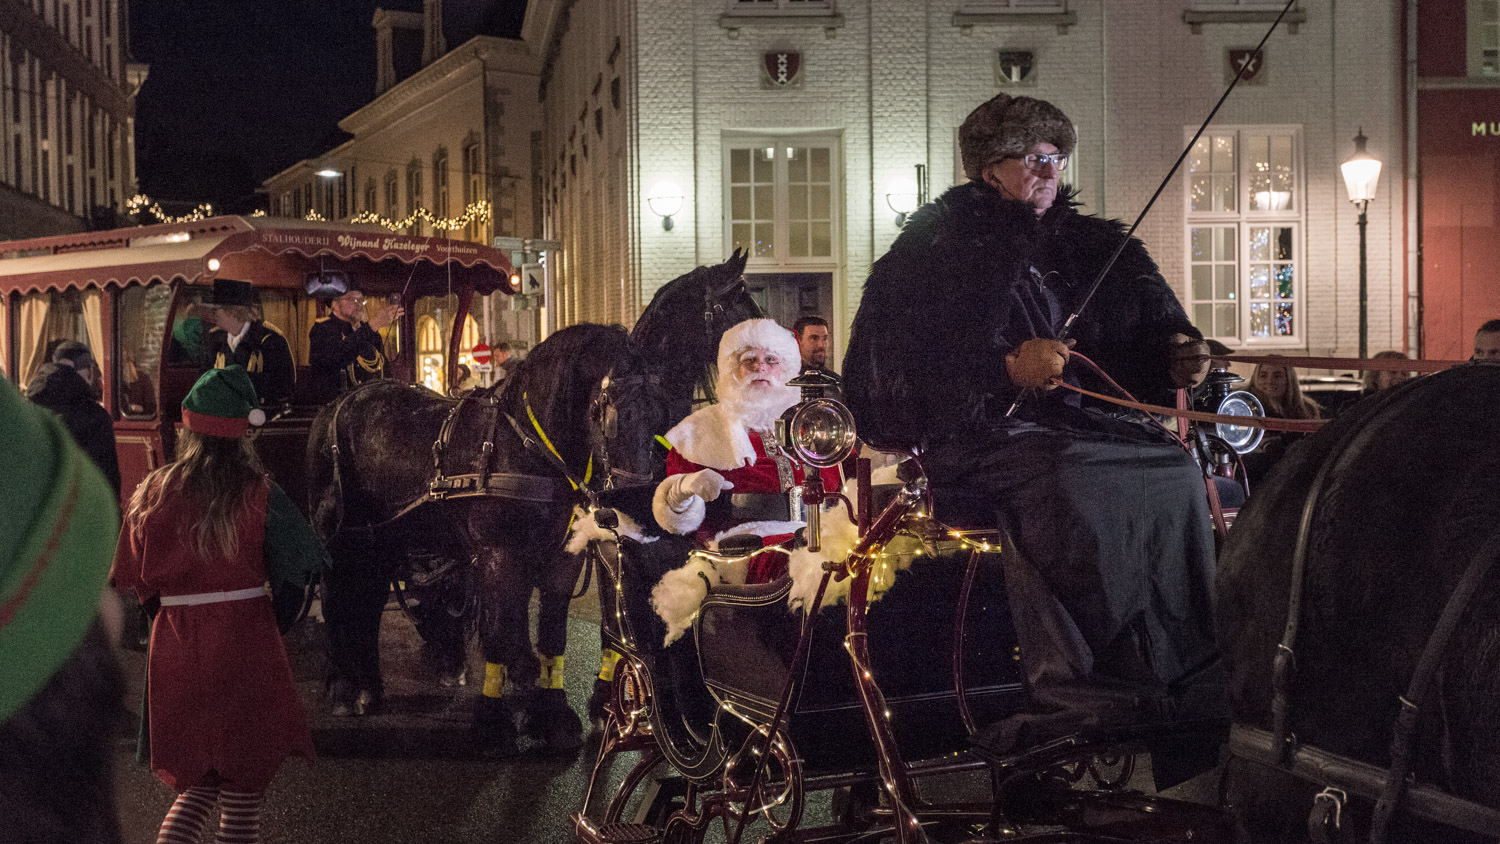 De kerstman op een slee in Maastricht tijdens de aankomst van de kerstman